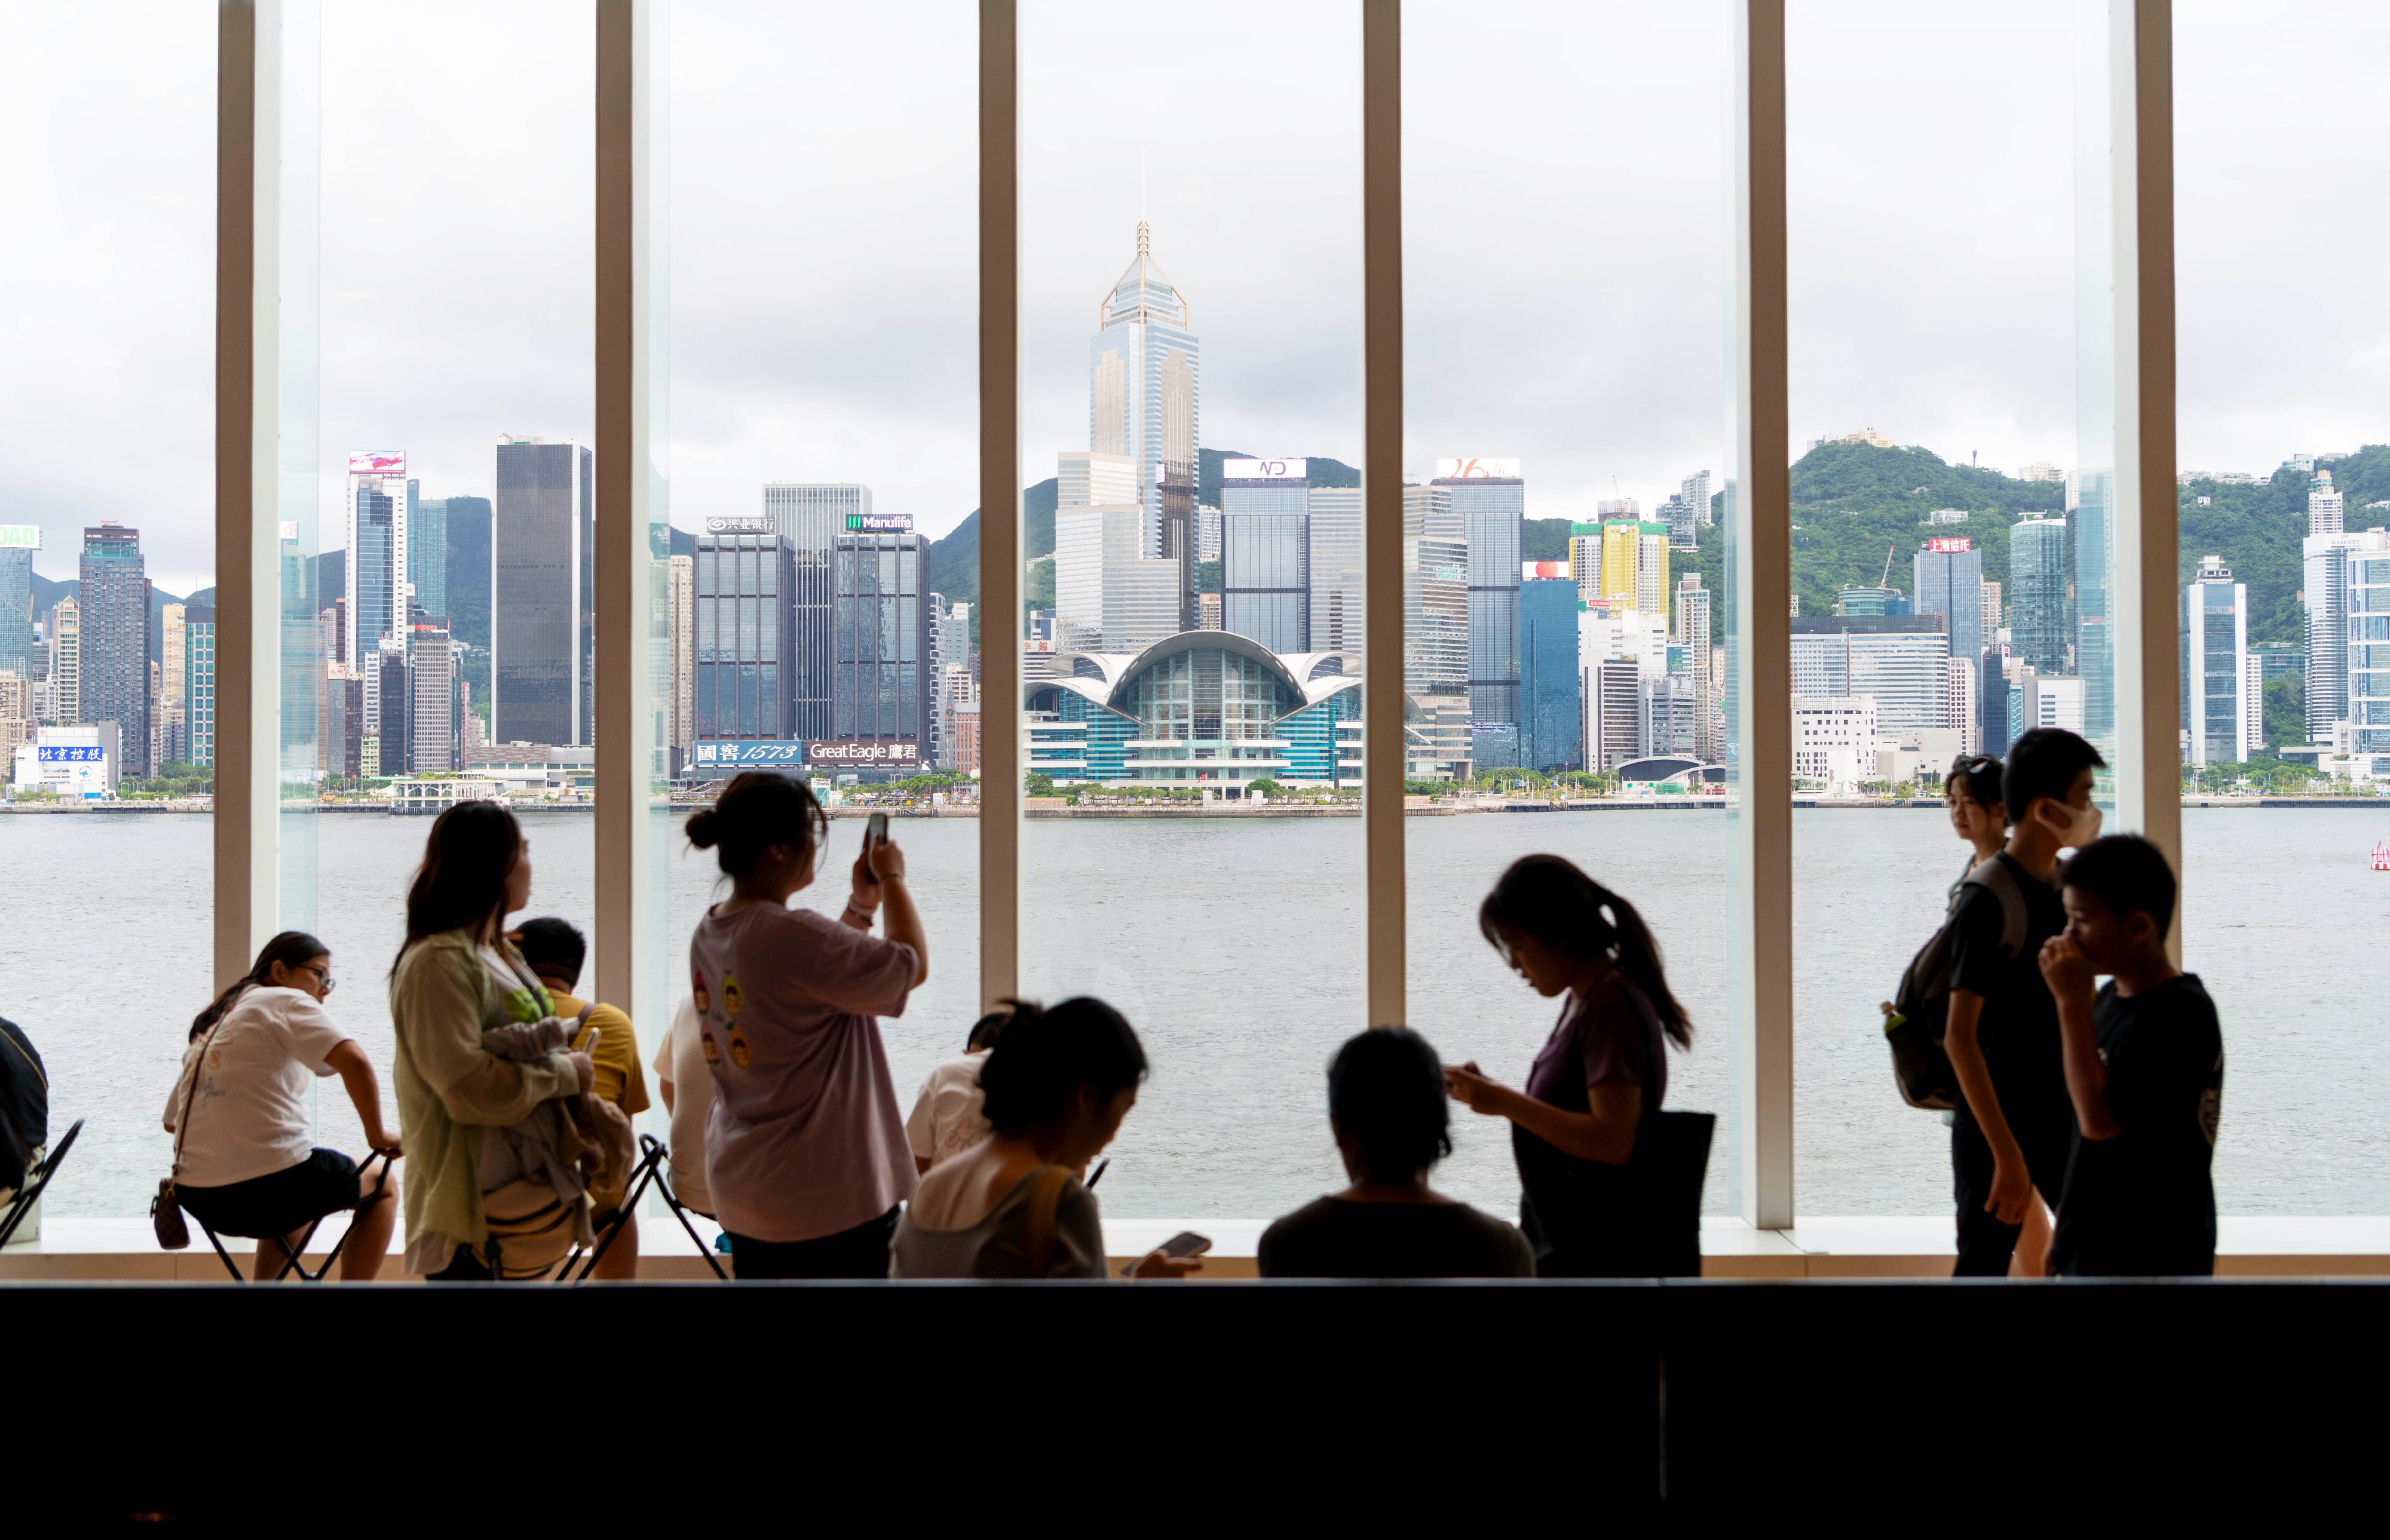 康樂及文化事務署轄下的香港藝術館一直深受市民及旅客歡迎，自二○一九年翻新後重開以來，入場人數屢創新高，今日（八月十二日）迎來第二百萬名參觀者。藝術館內每層均設有落地玻璃窗，觀眾在欣賞藏品的同時，也能飽覽維多利亞港這件香港的標誌性「藝術品」。